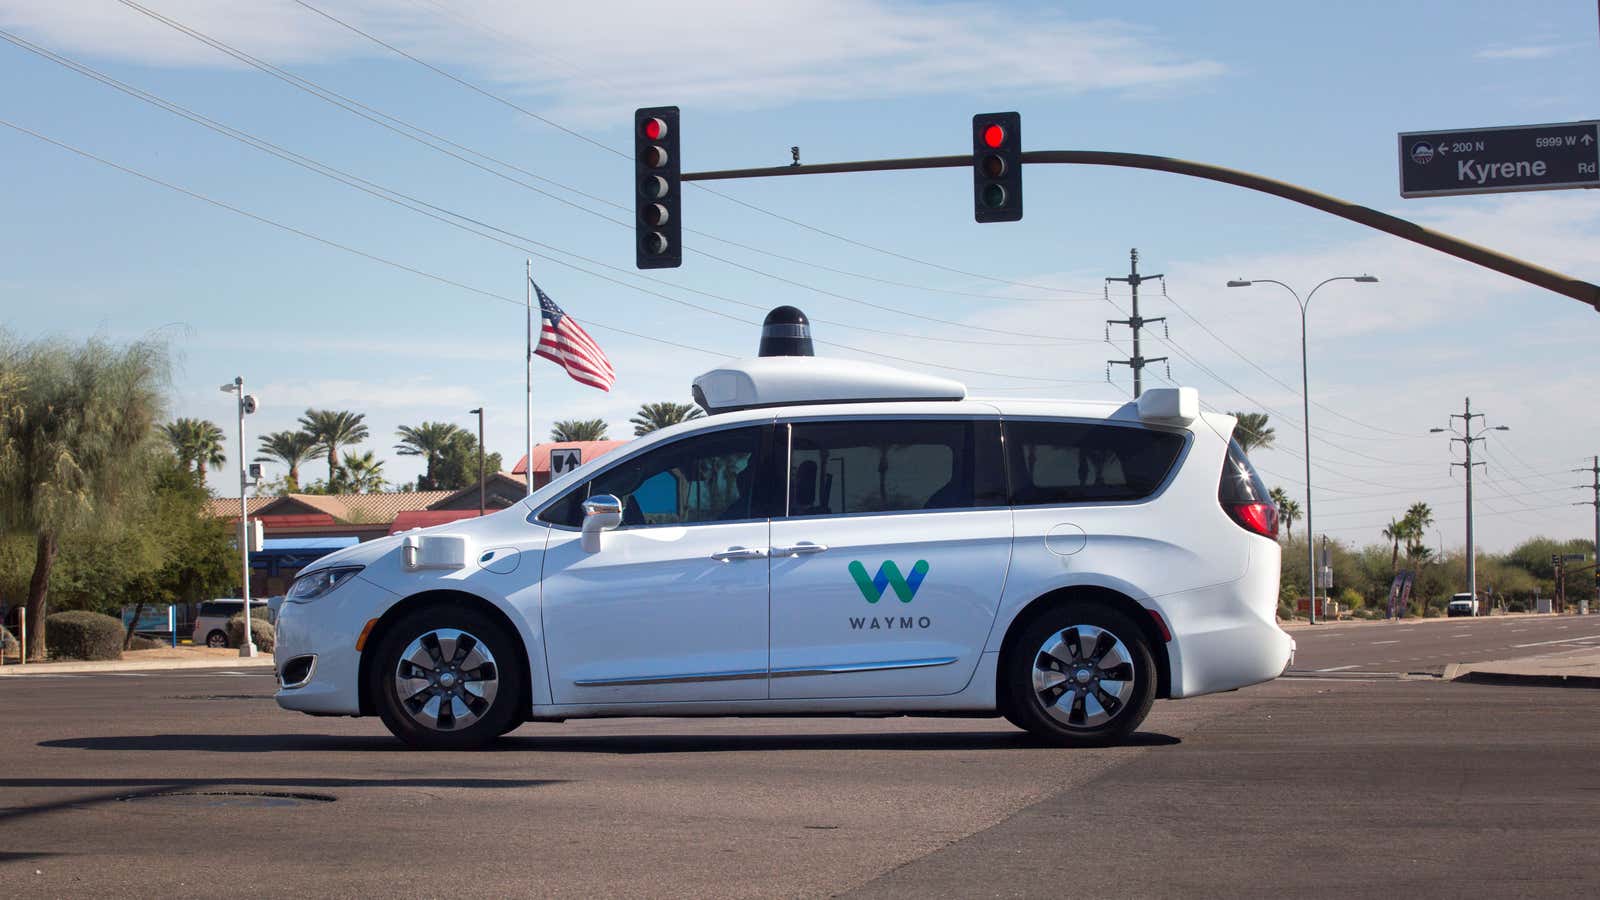 A Waymo driverless car in Chandler, Arizona.